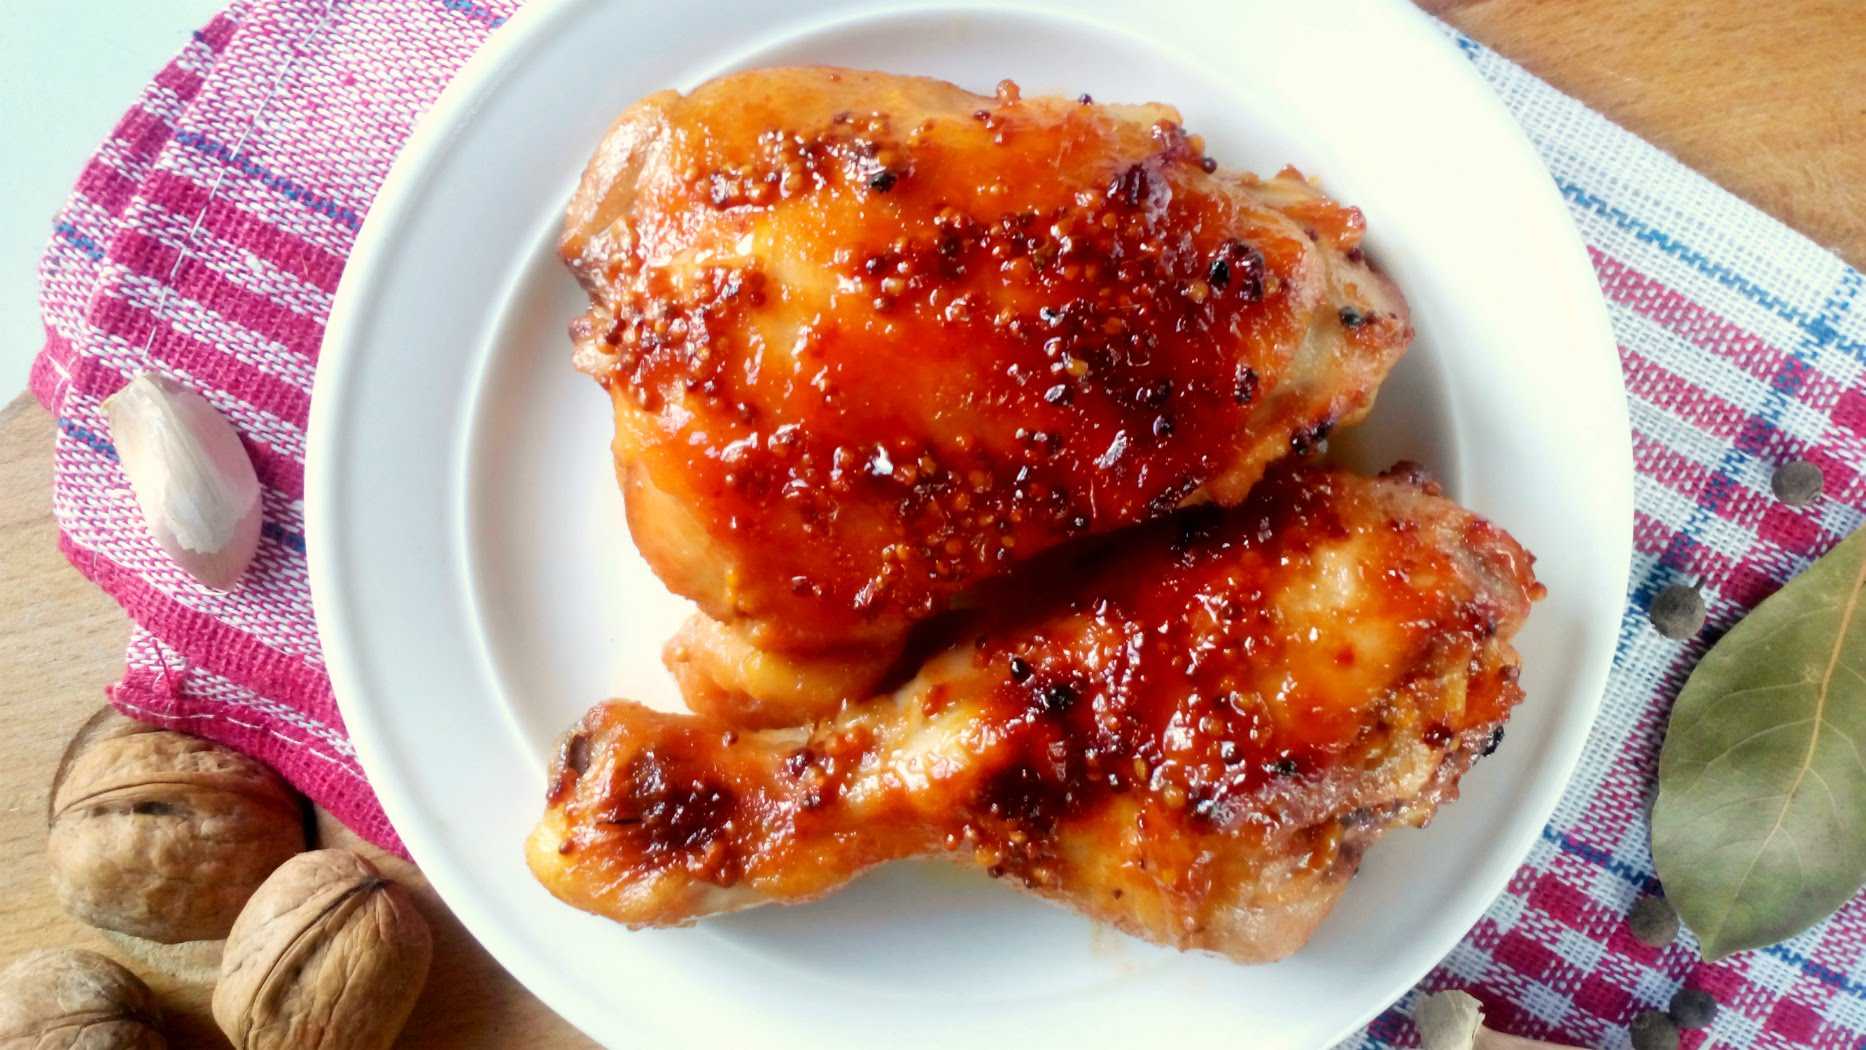 Куриные бедра на сковороде - 10 вкусных рецептов приготовления с фото пошагово